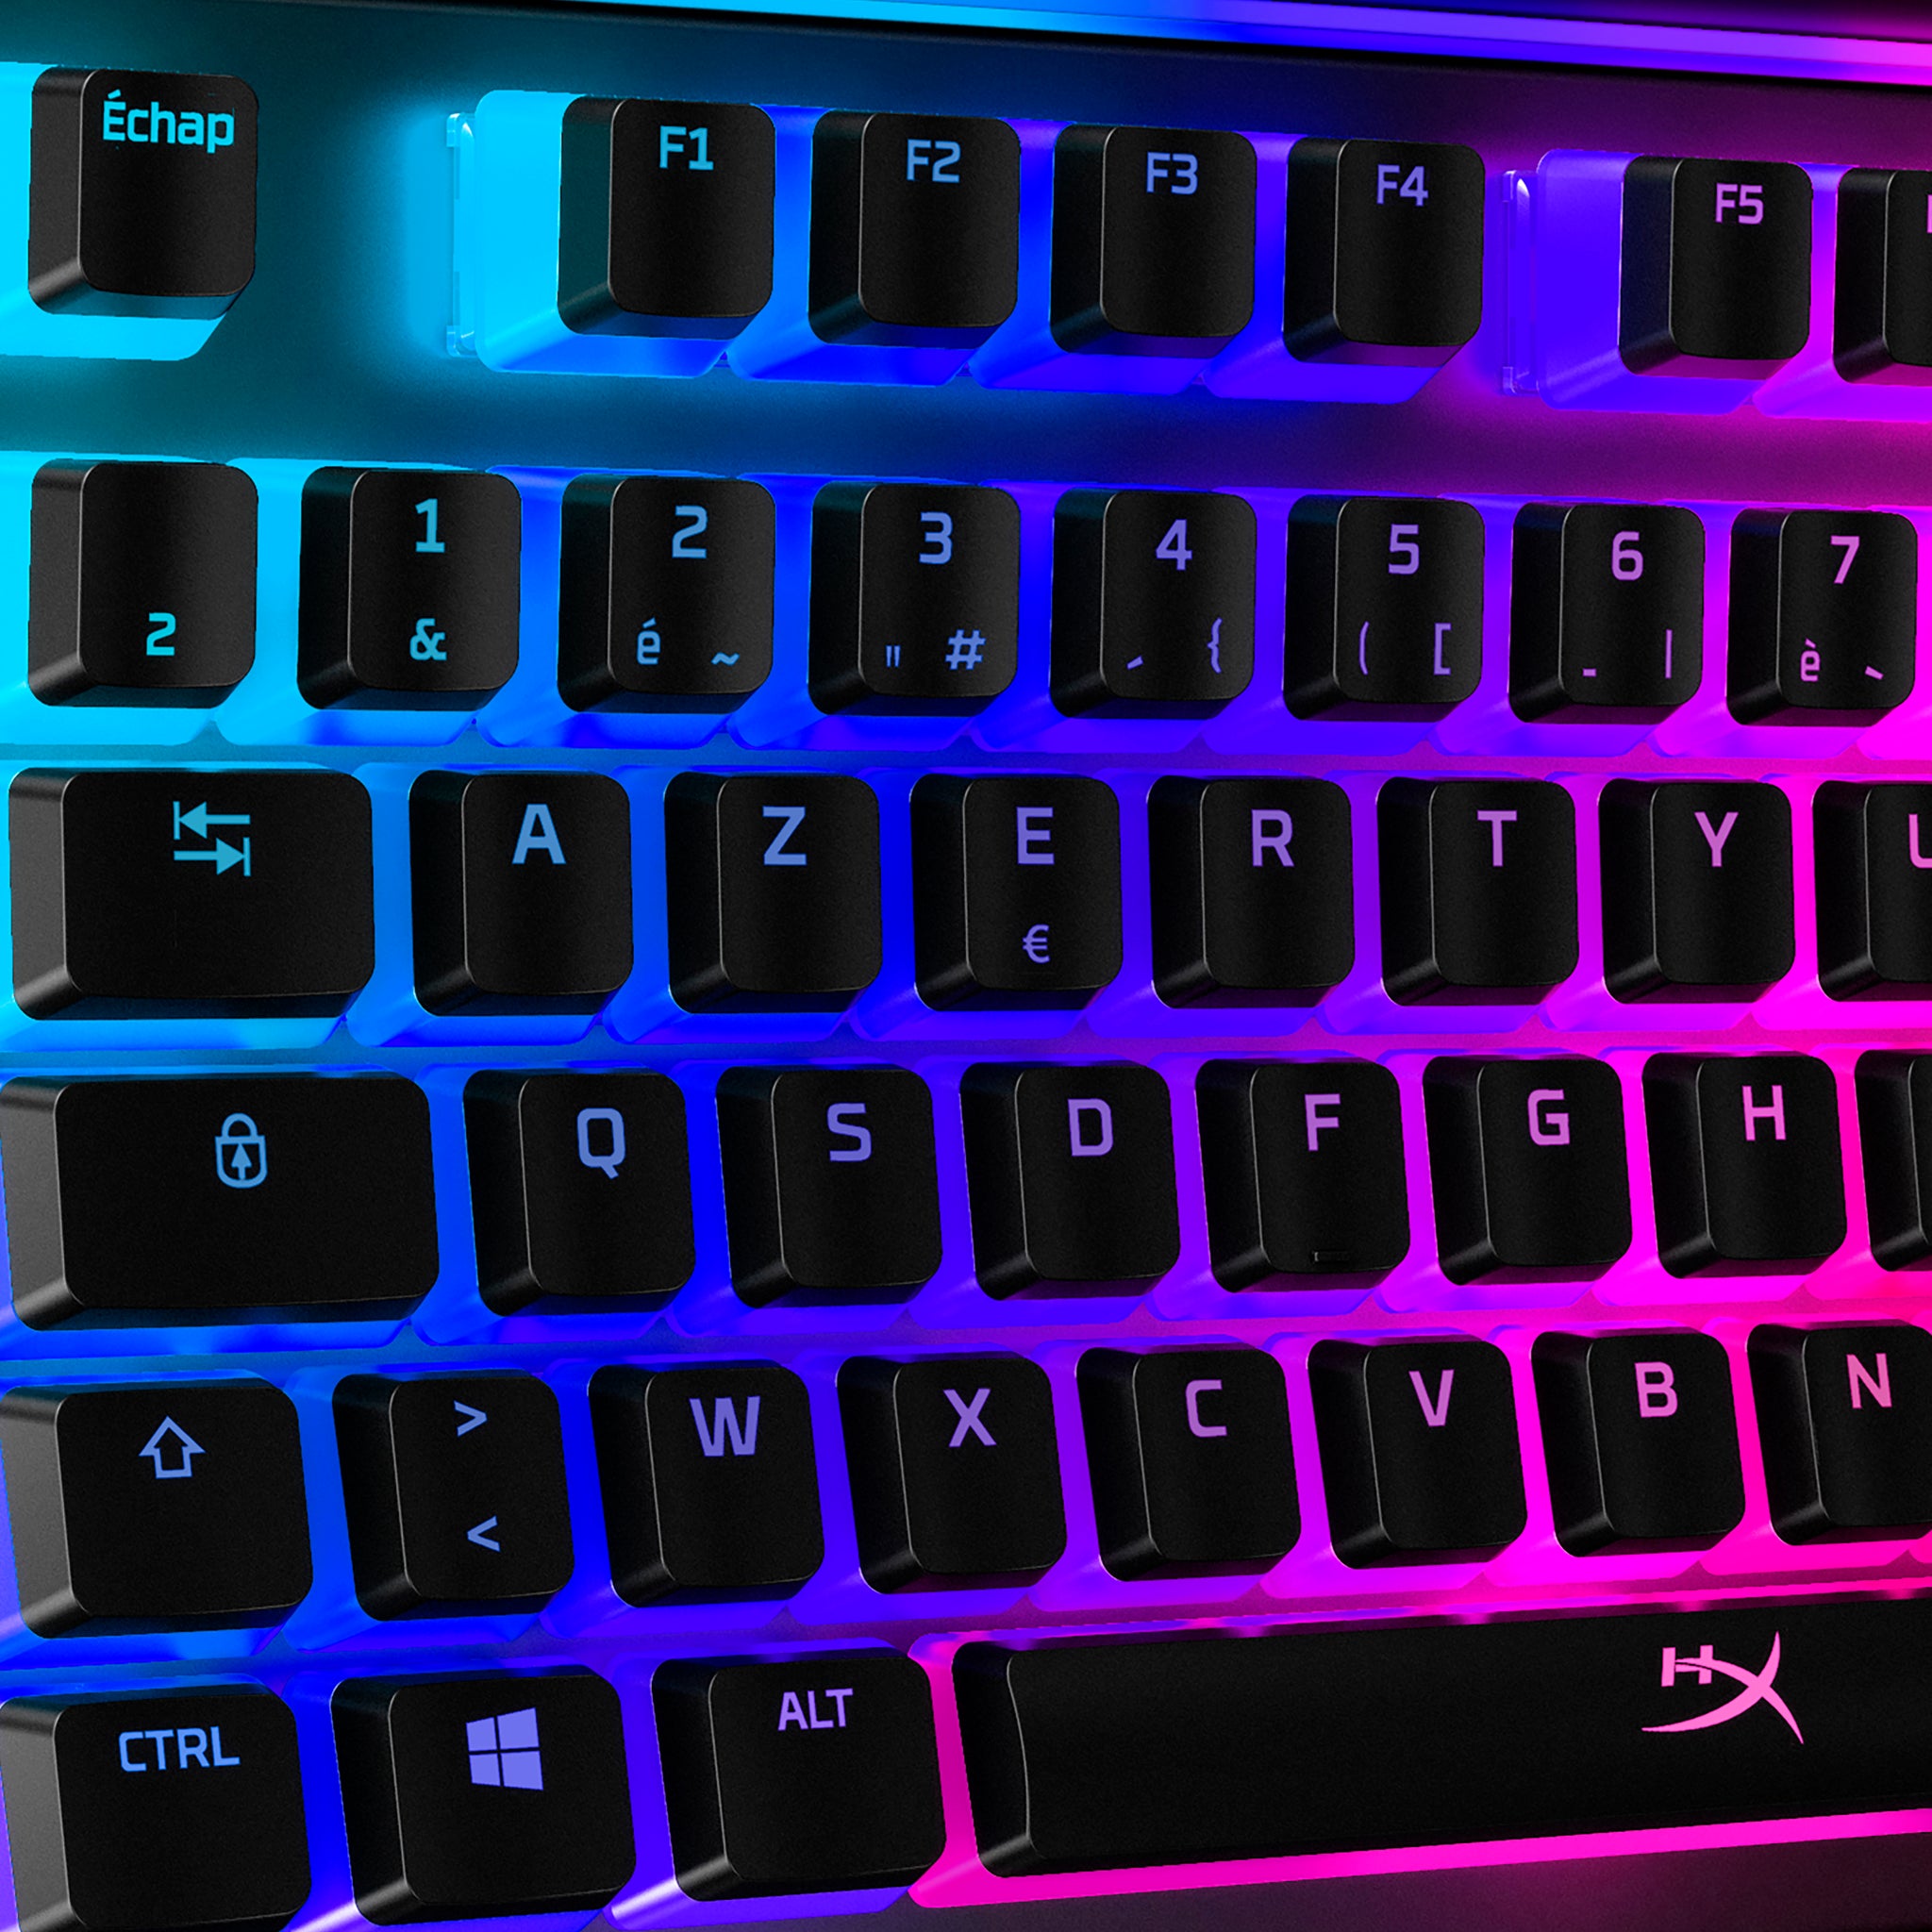 Les touches Hyperx Pudding se rapprochent sur le côté gauche du clavier avec visuel de RGB